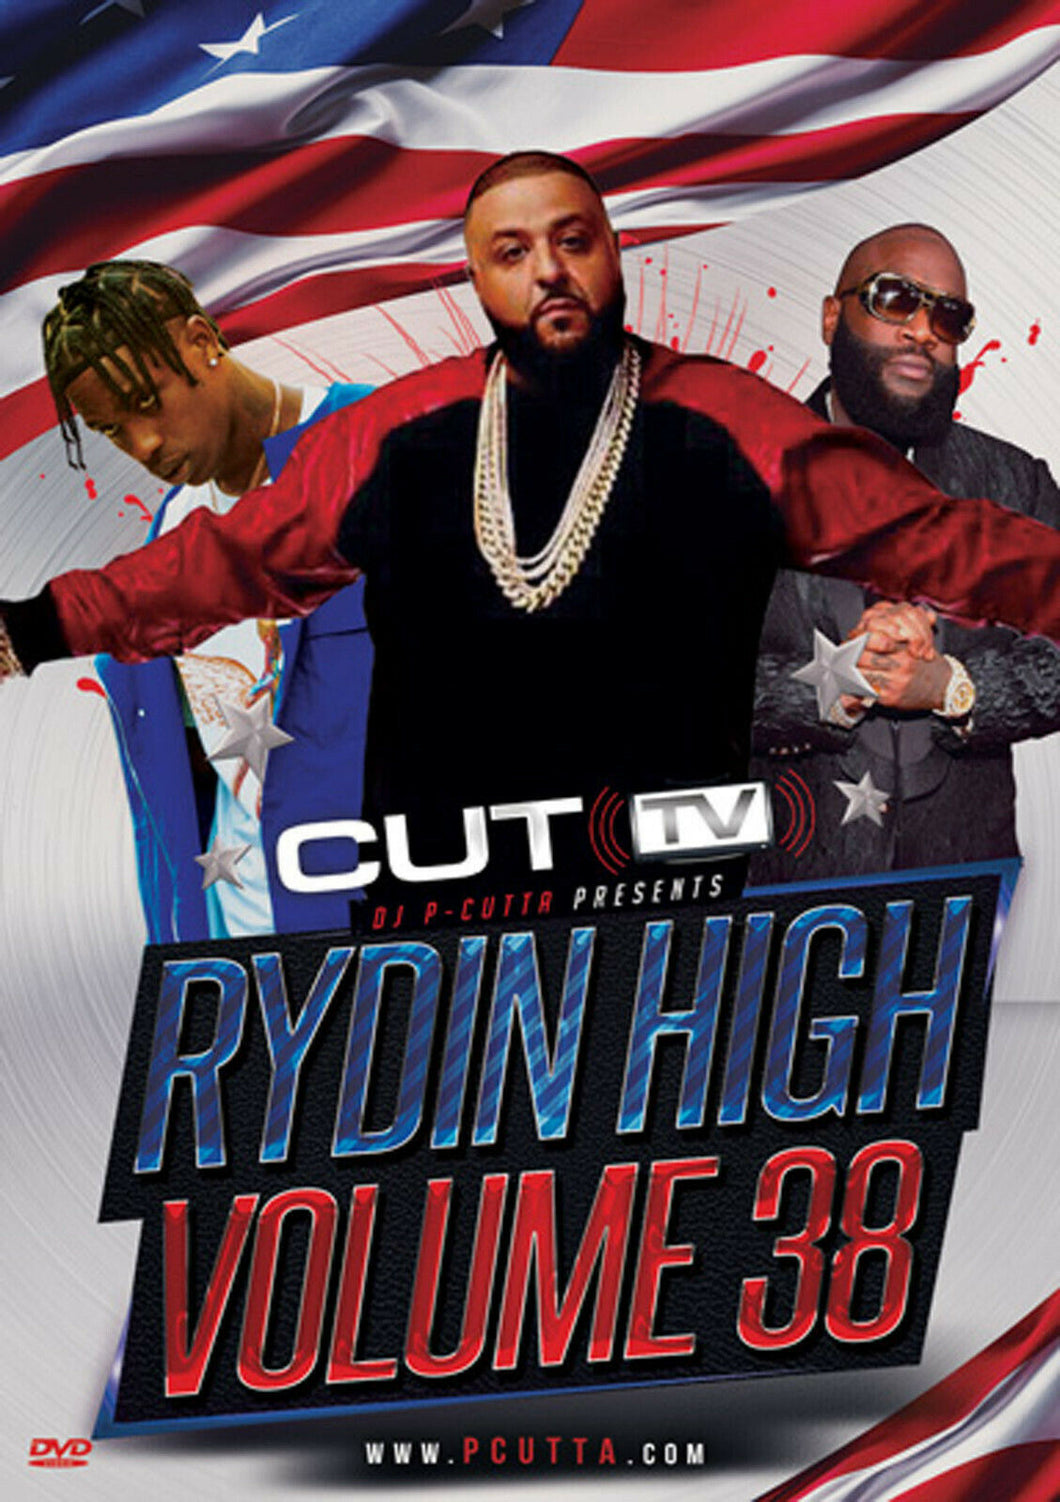 CUT TV - RYDIN HIGH VOL. 38 (MUSIC VIDEO DVD) FUTURE, DJ KHALED, MIGOS, 2 CHAINZ